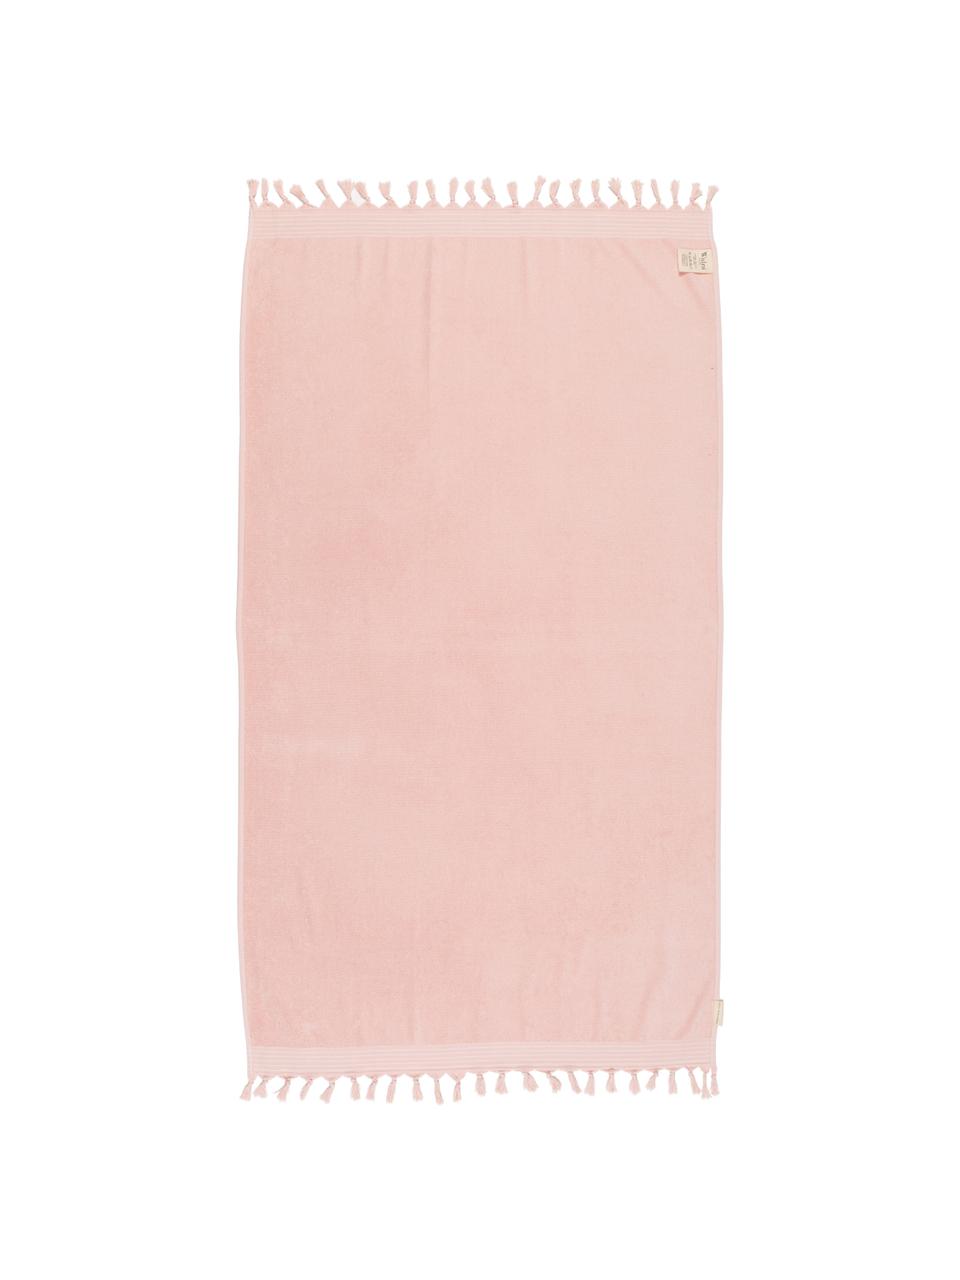 Hamamtuch Soft Cotton mit Frottee-Rückseite, Rückseite: Frottee, Rosa, Weiss, 100 x 180 cm